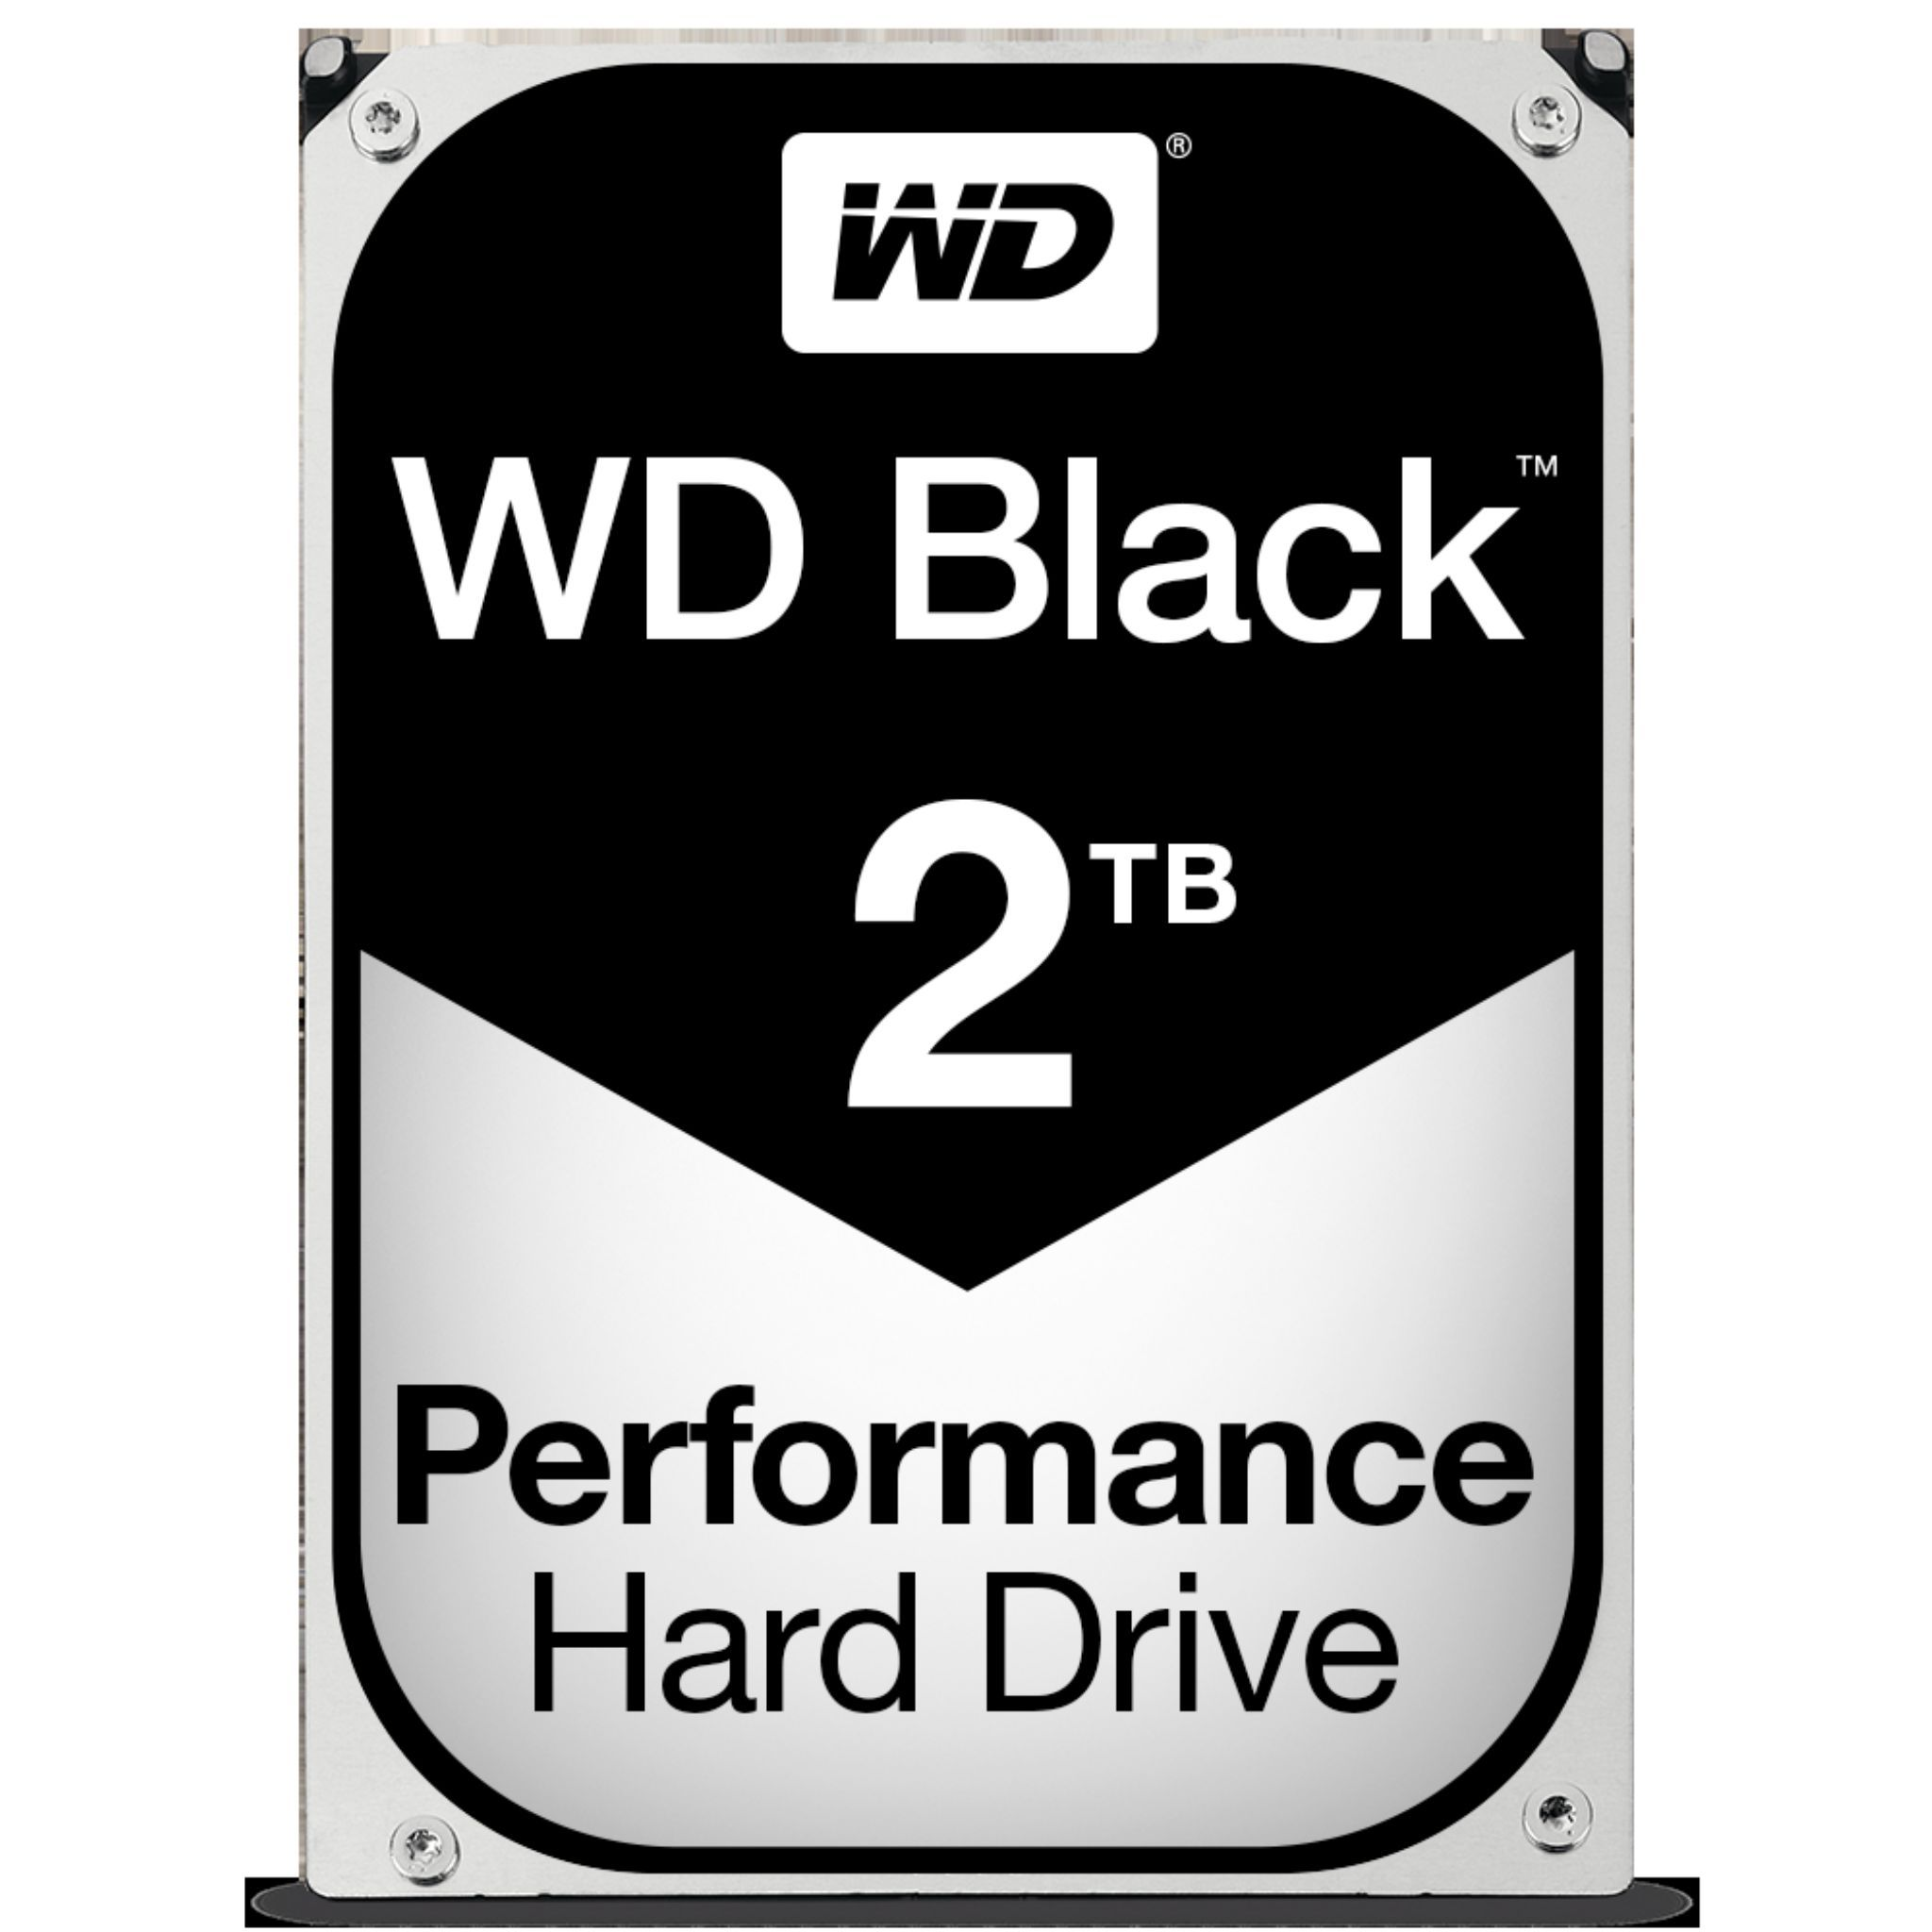 WESTERN DIGITAL WD Black MB intern Performance 6Gb/s, Drive Zoll, 2TB, WD2003FZEX), - Hard 64 3,5 2 TB, (SATA HDD